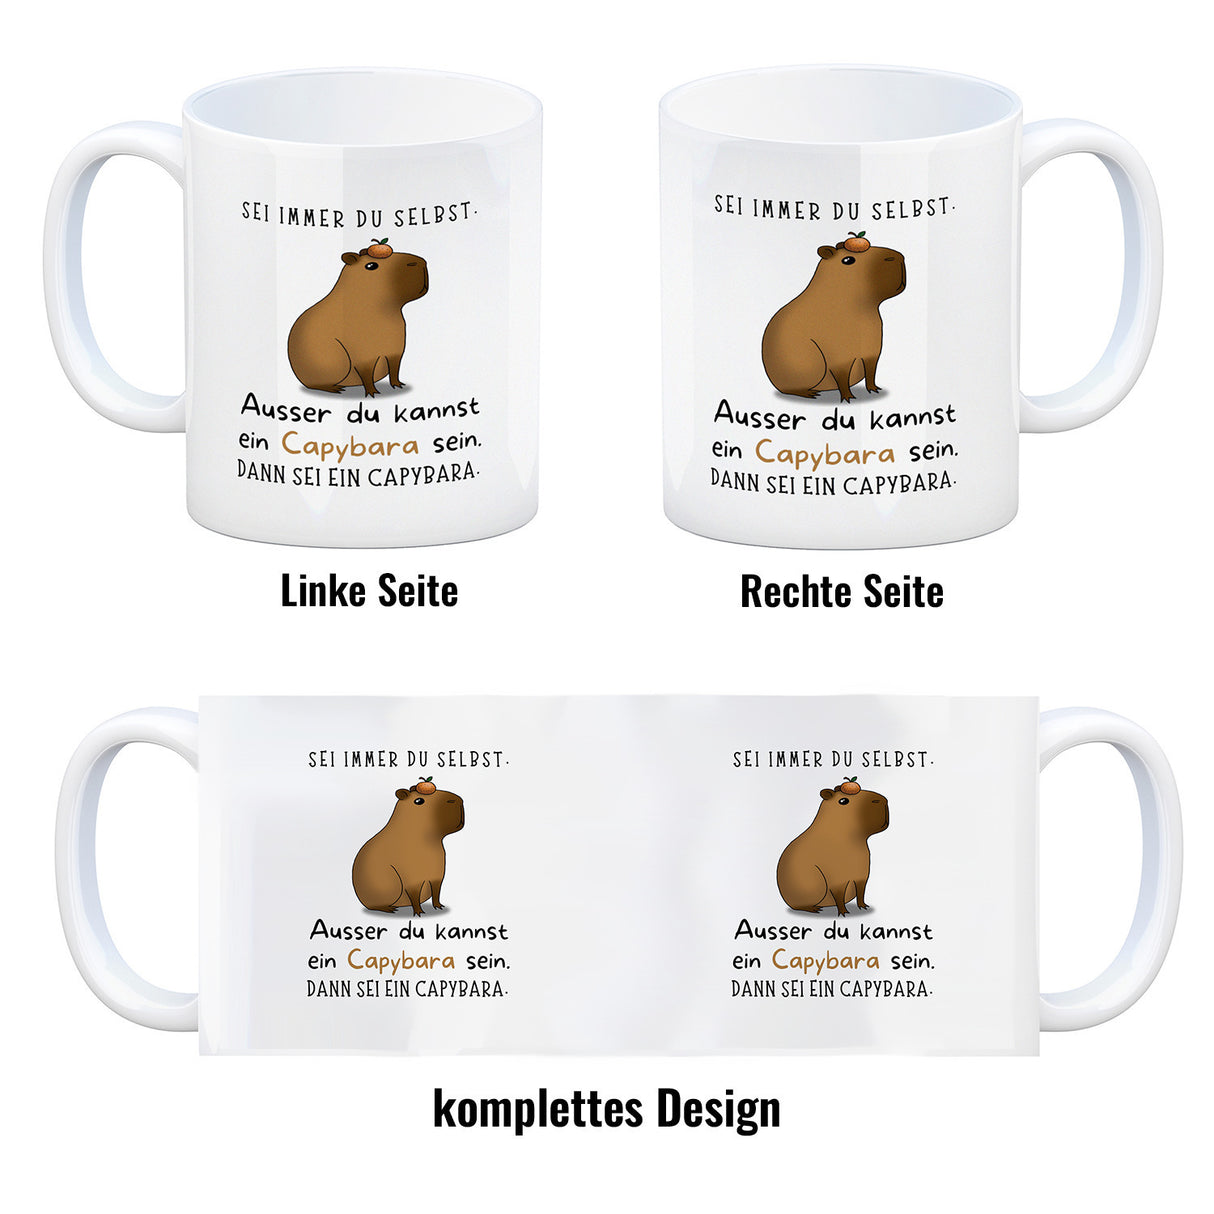 Sei immer du selbst - ausser du kannst ein Capybara sein Kaffeebecher